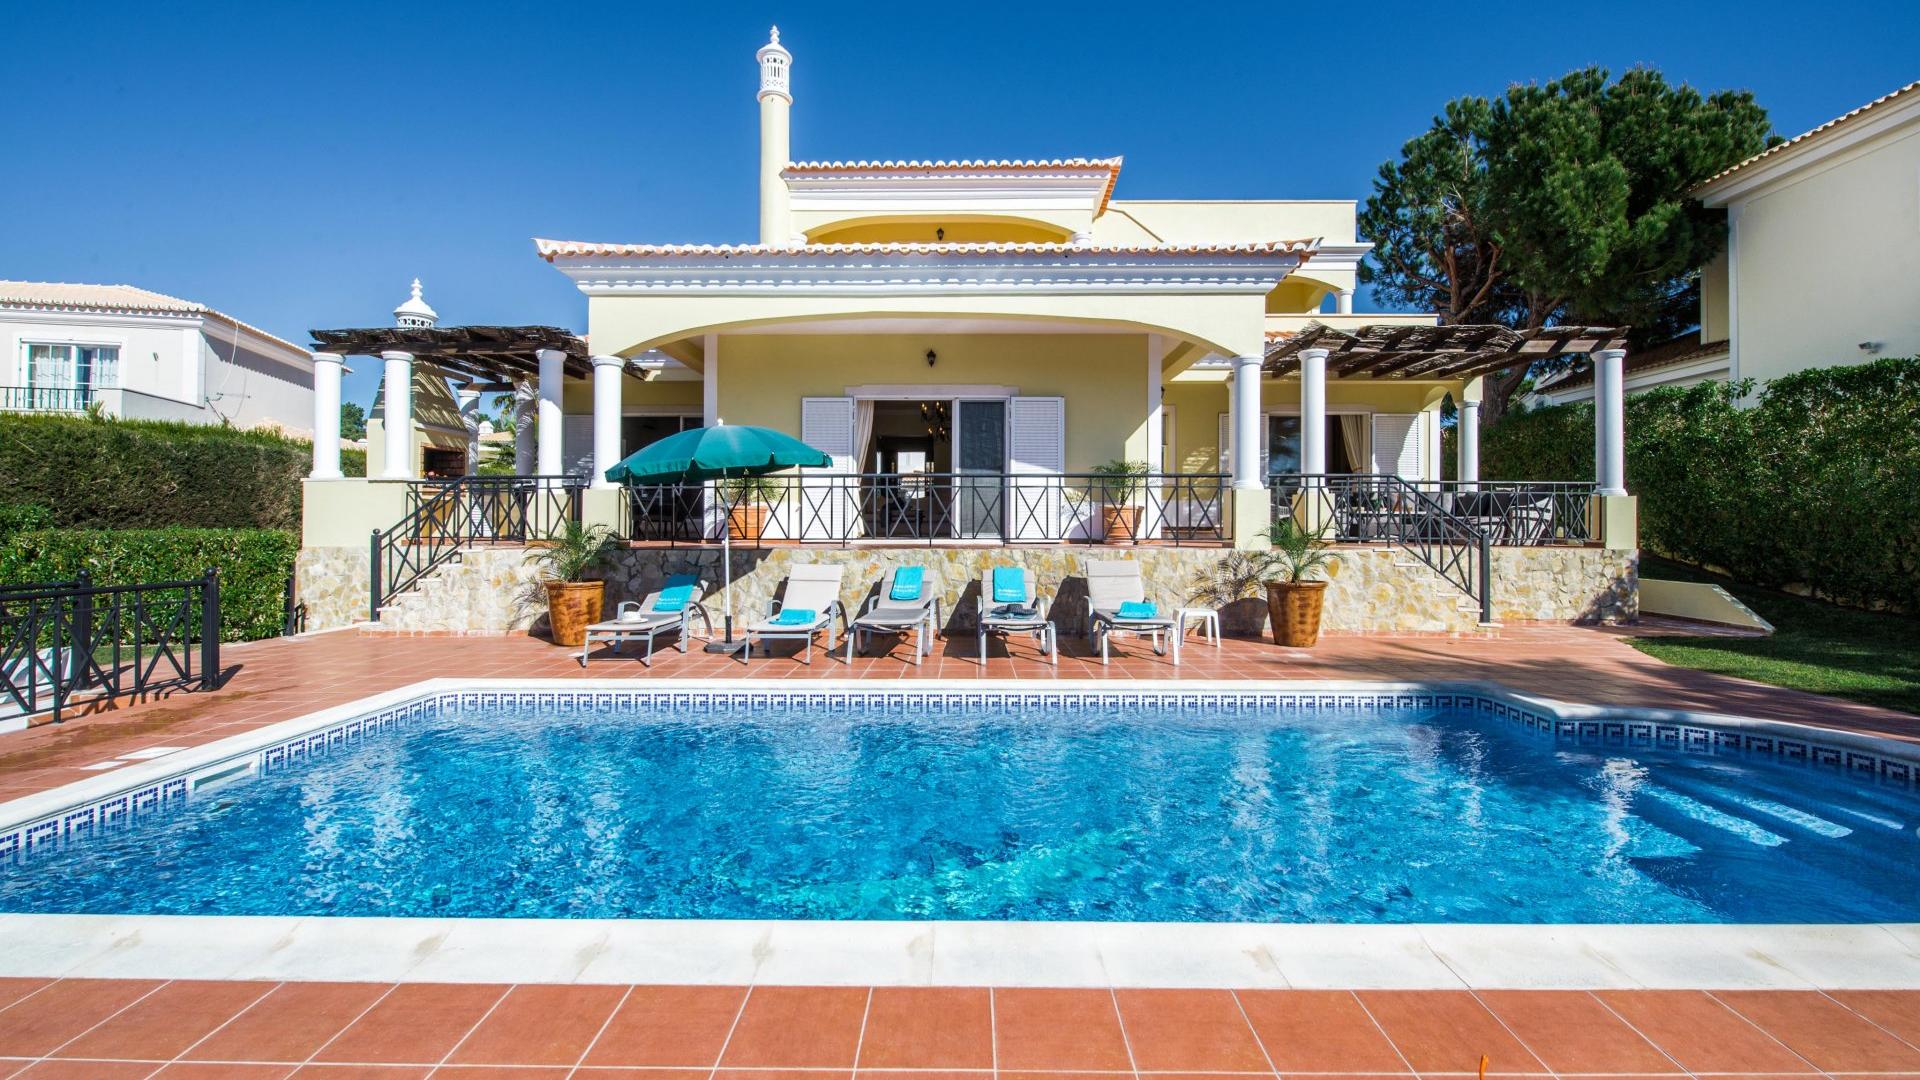 Villa dos Sonhos - Varandas do Lago, Quinta do Lago, Algarve - Villa_dos_Sonhos_2.jpg